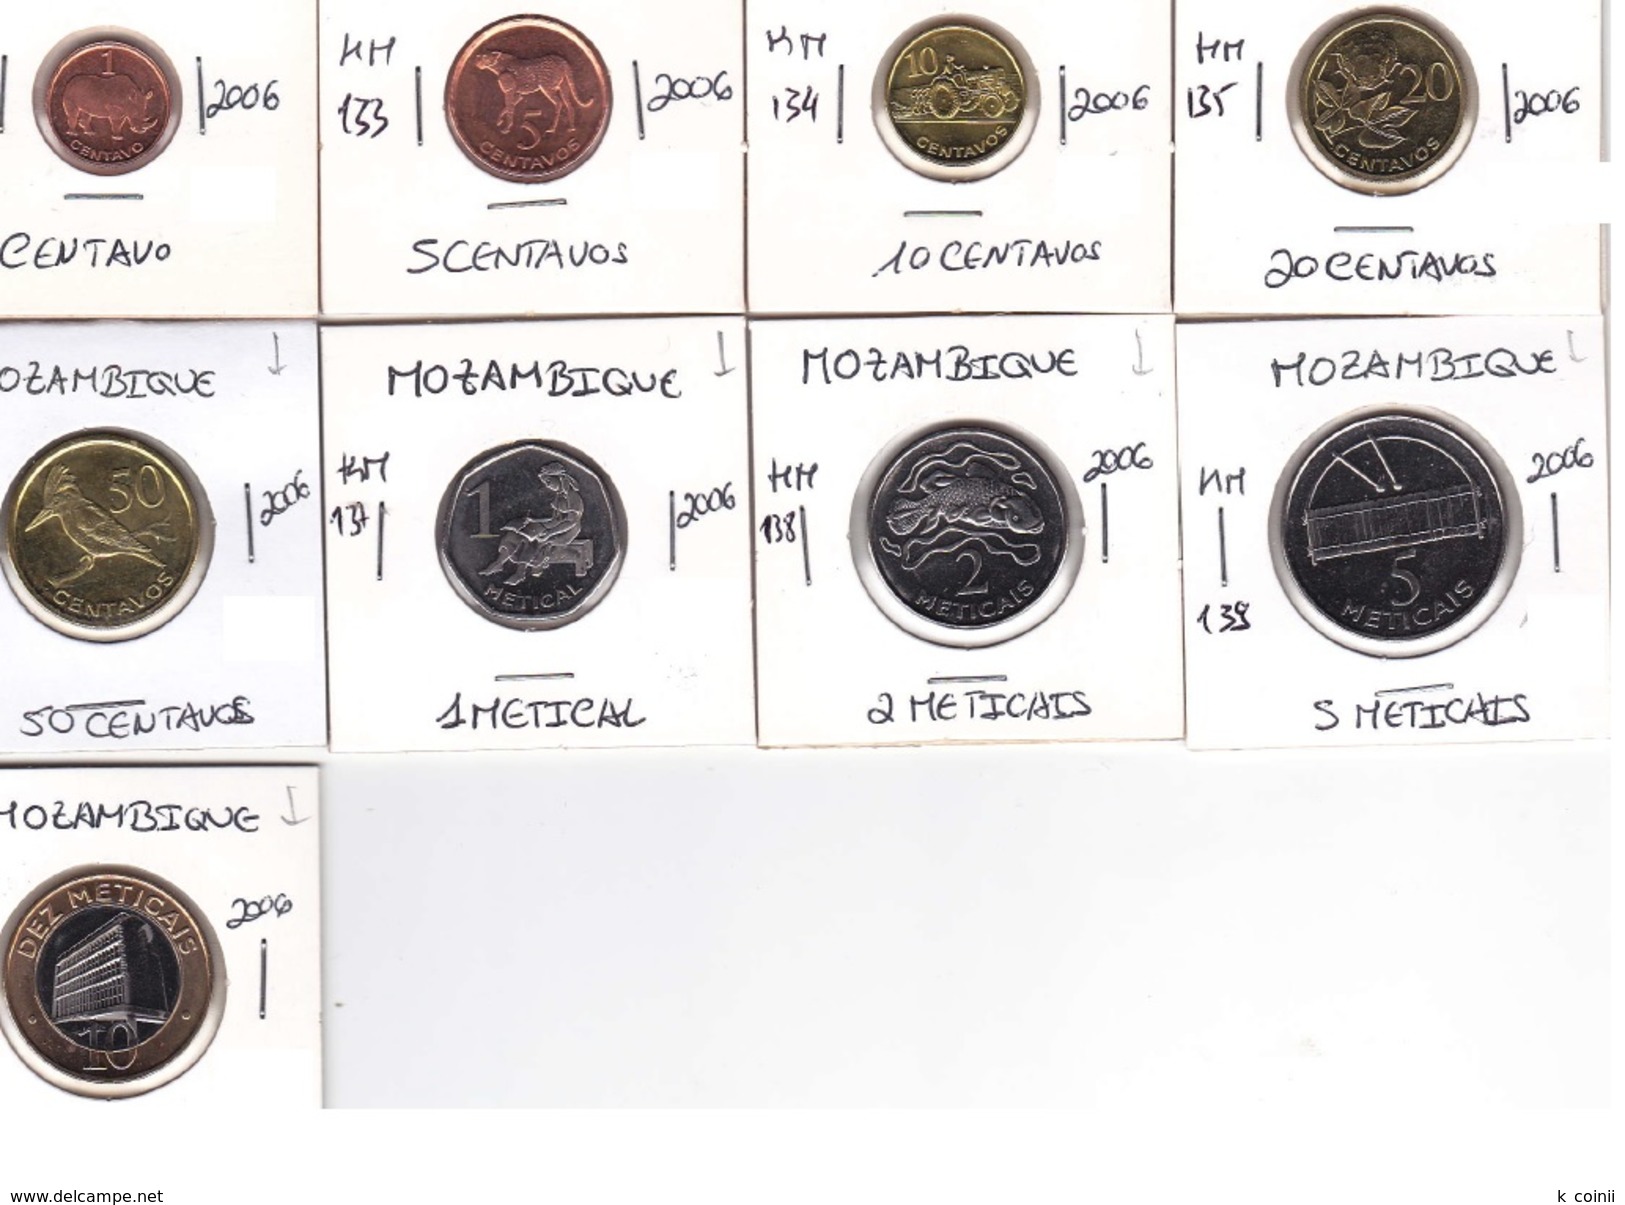 Mozambique - Set Of 9 Coins Of 2006  - UNC - Mozambique